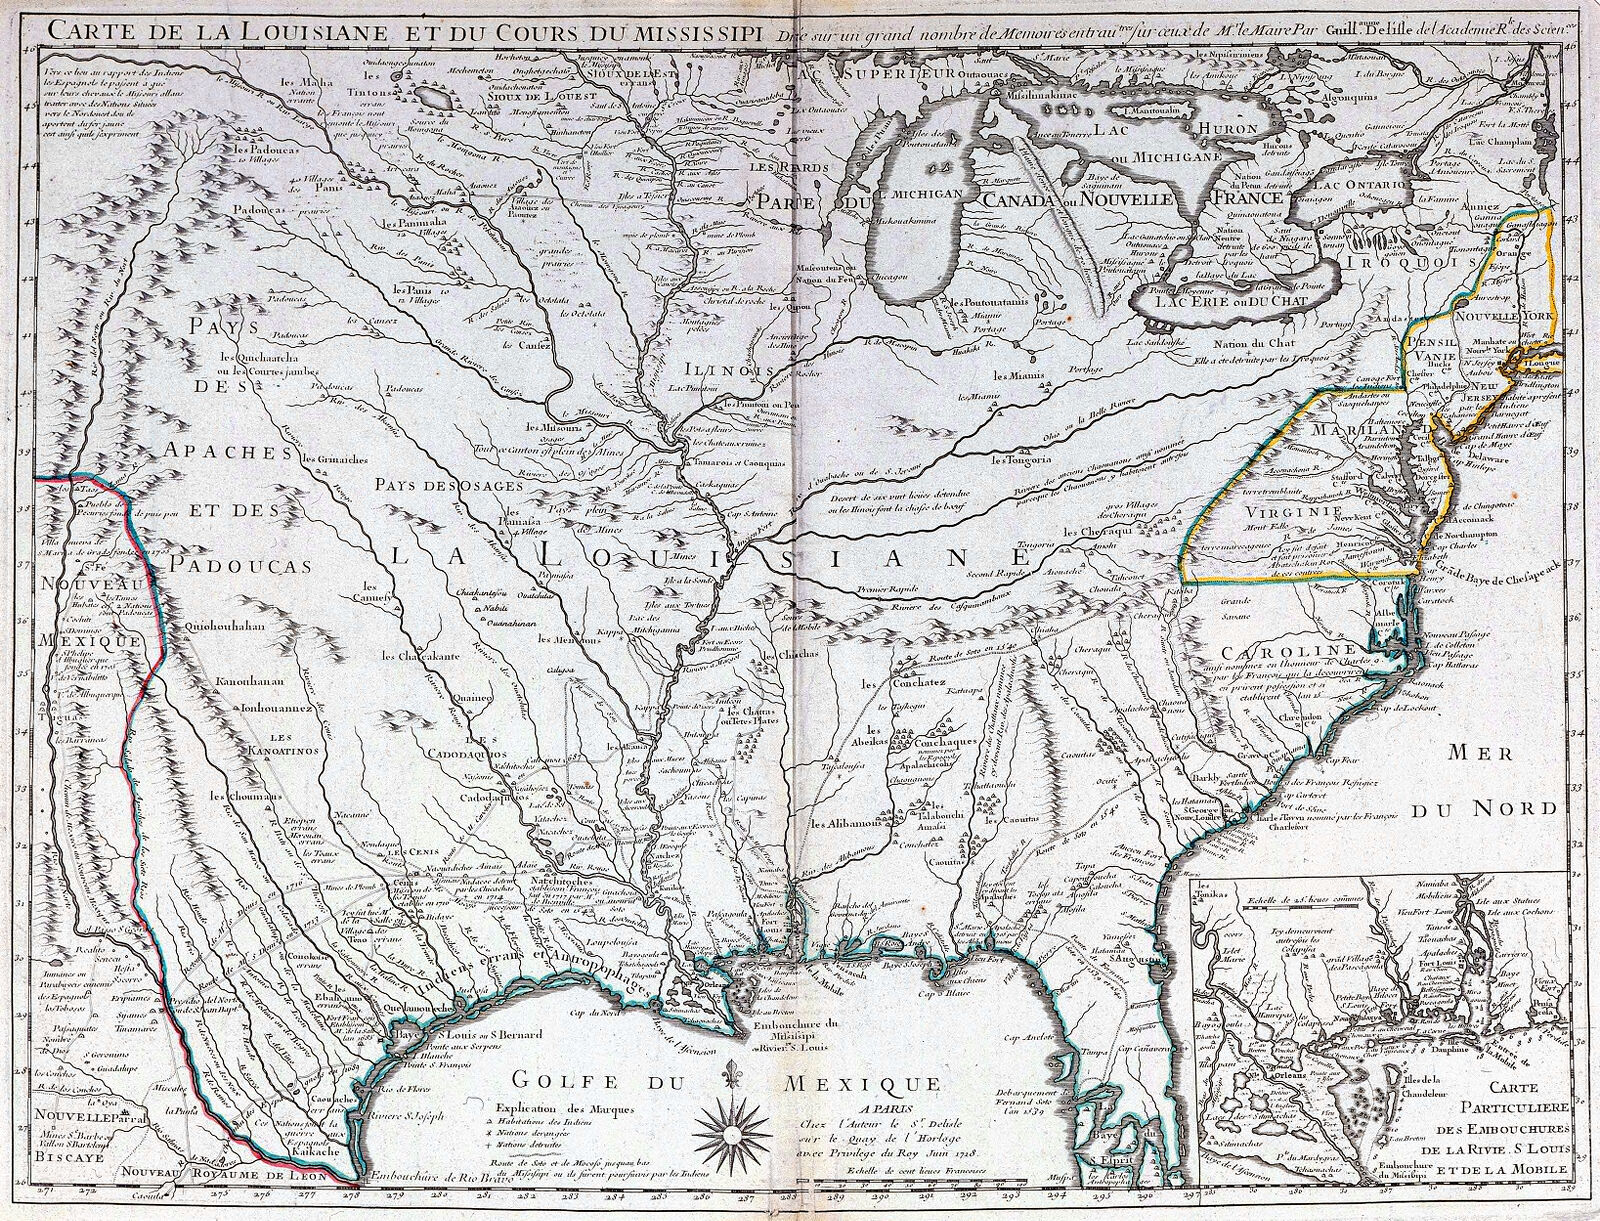 Carte de la Louisiane et du cours du Mississipi dressee sur un grande